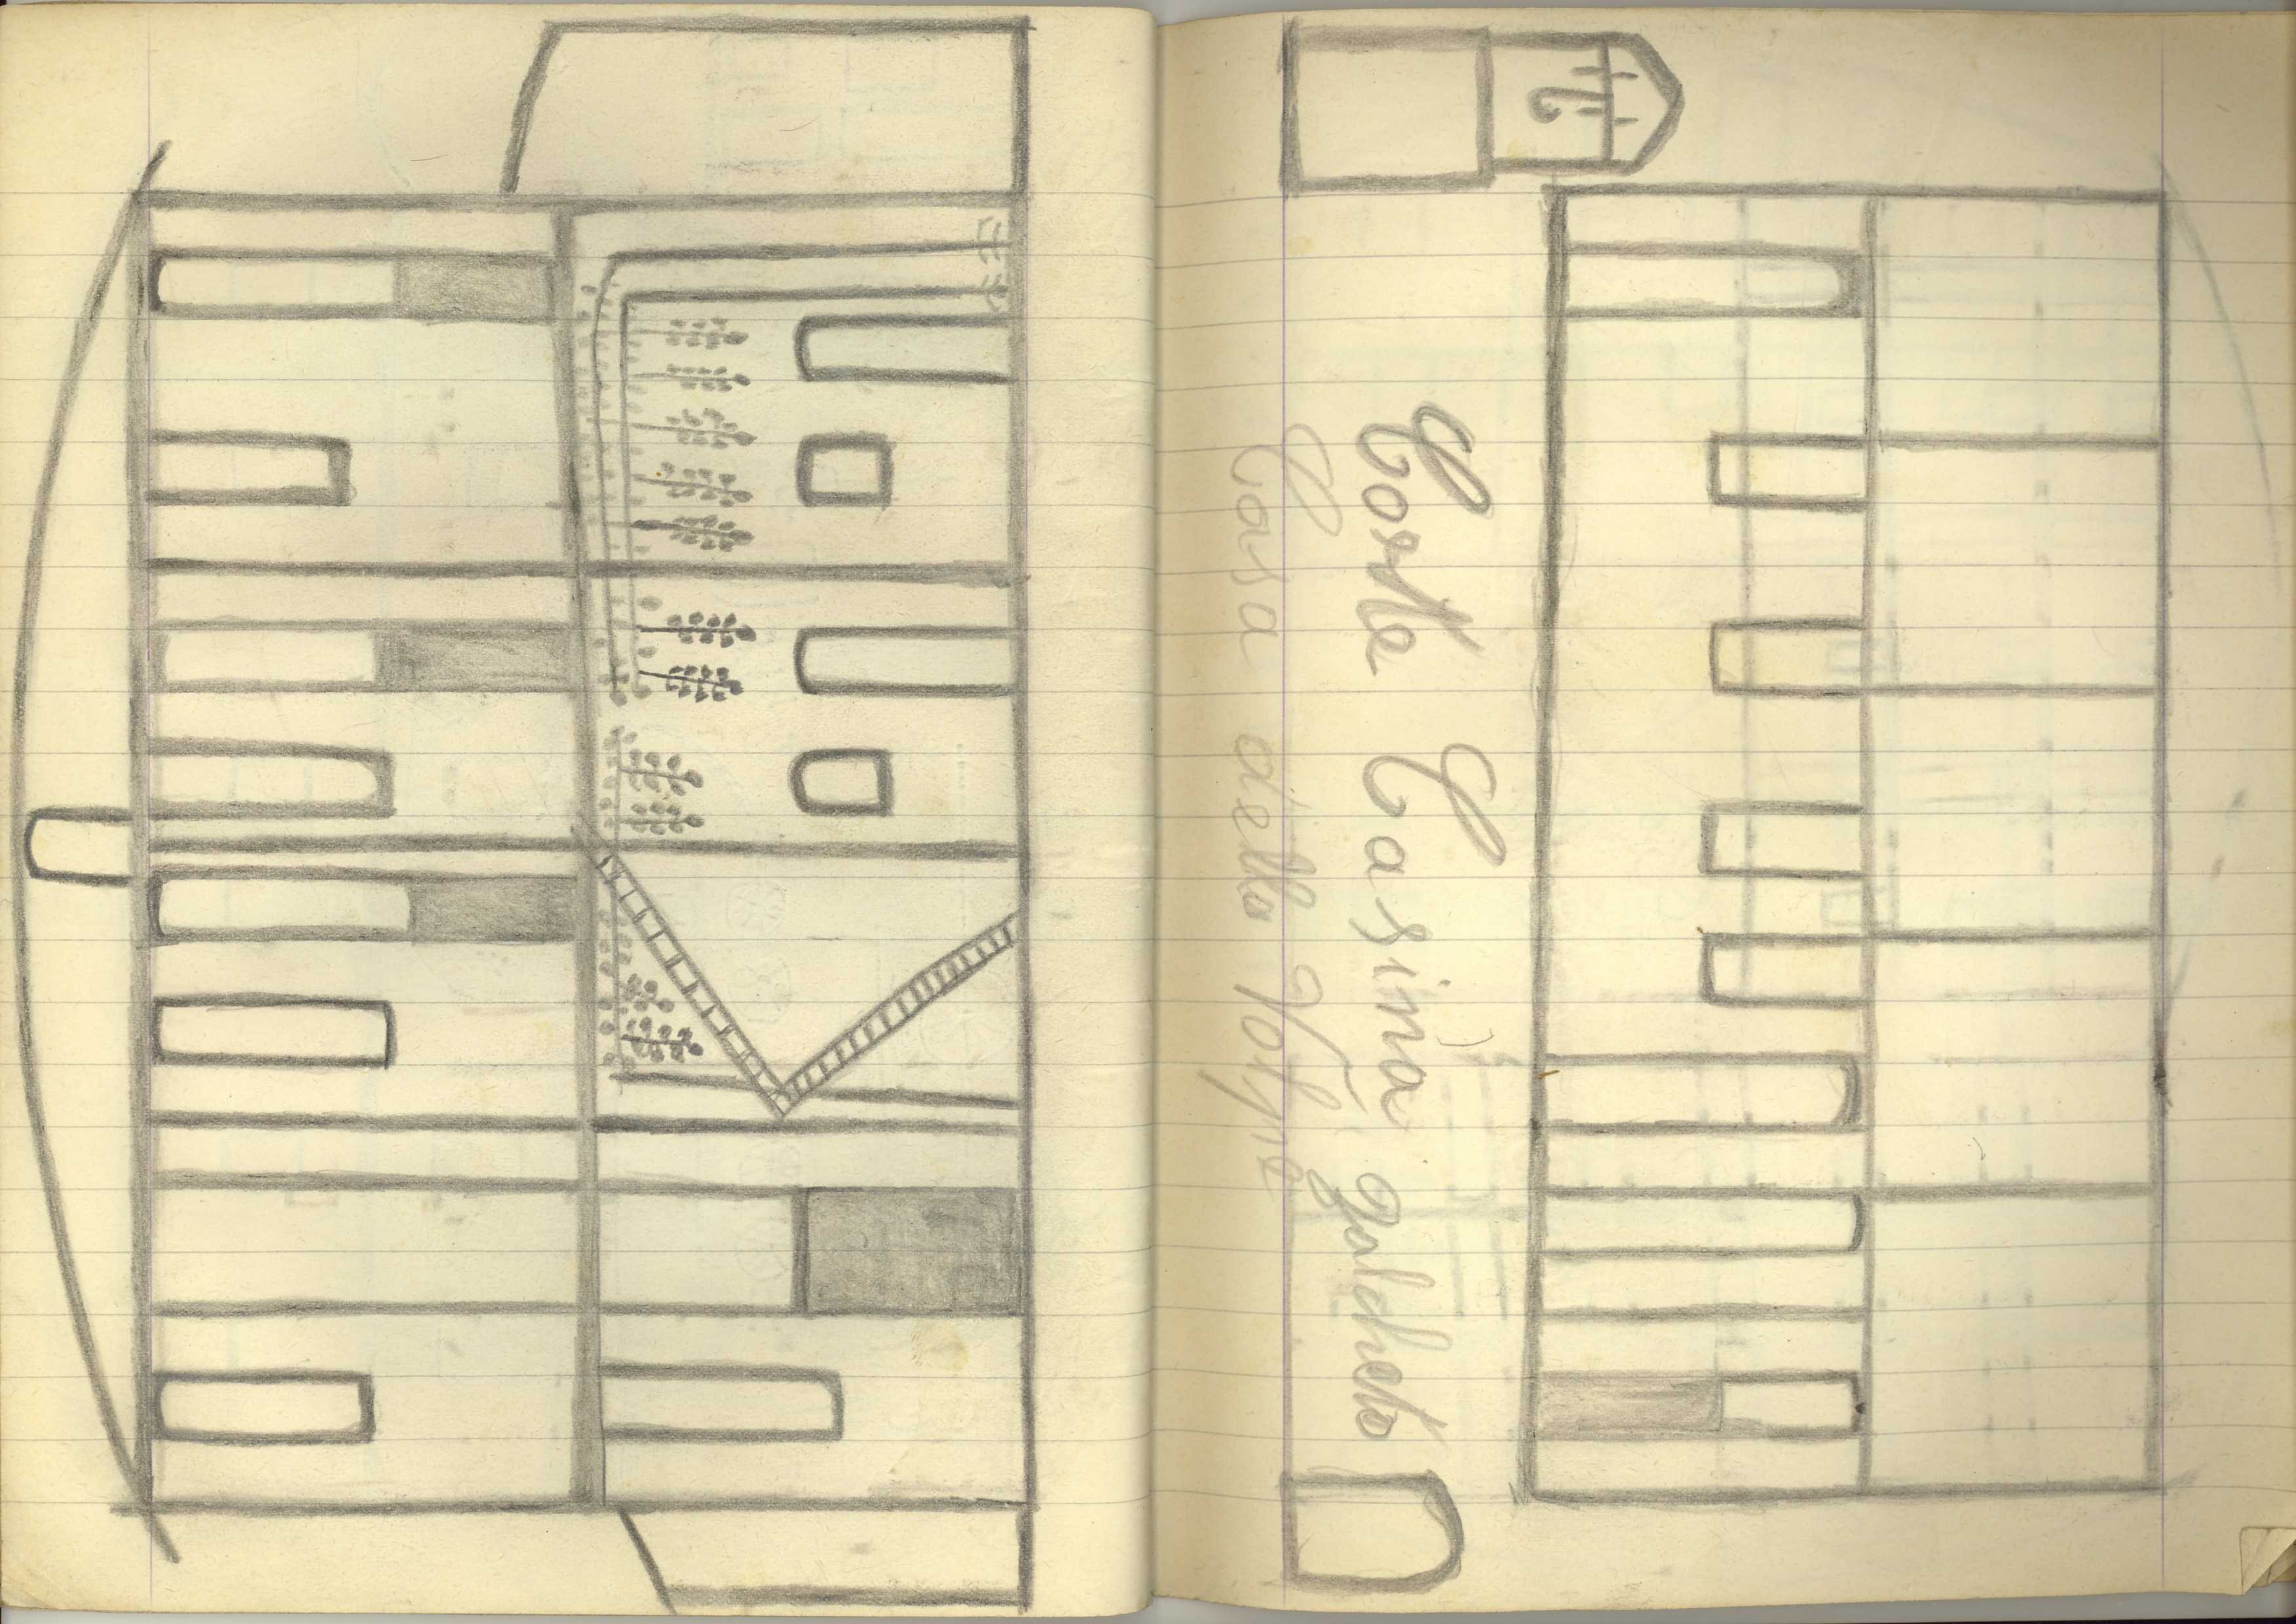 Senza Titolo, Quaderno di disegni (1) (taccuino di disegni) di Sopetti, Luigi - ambito manicomiale (inizio XX secolo)